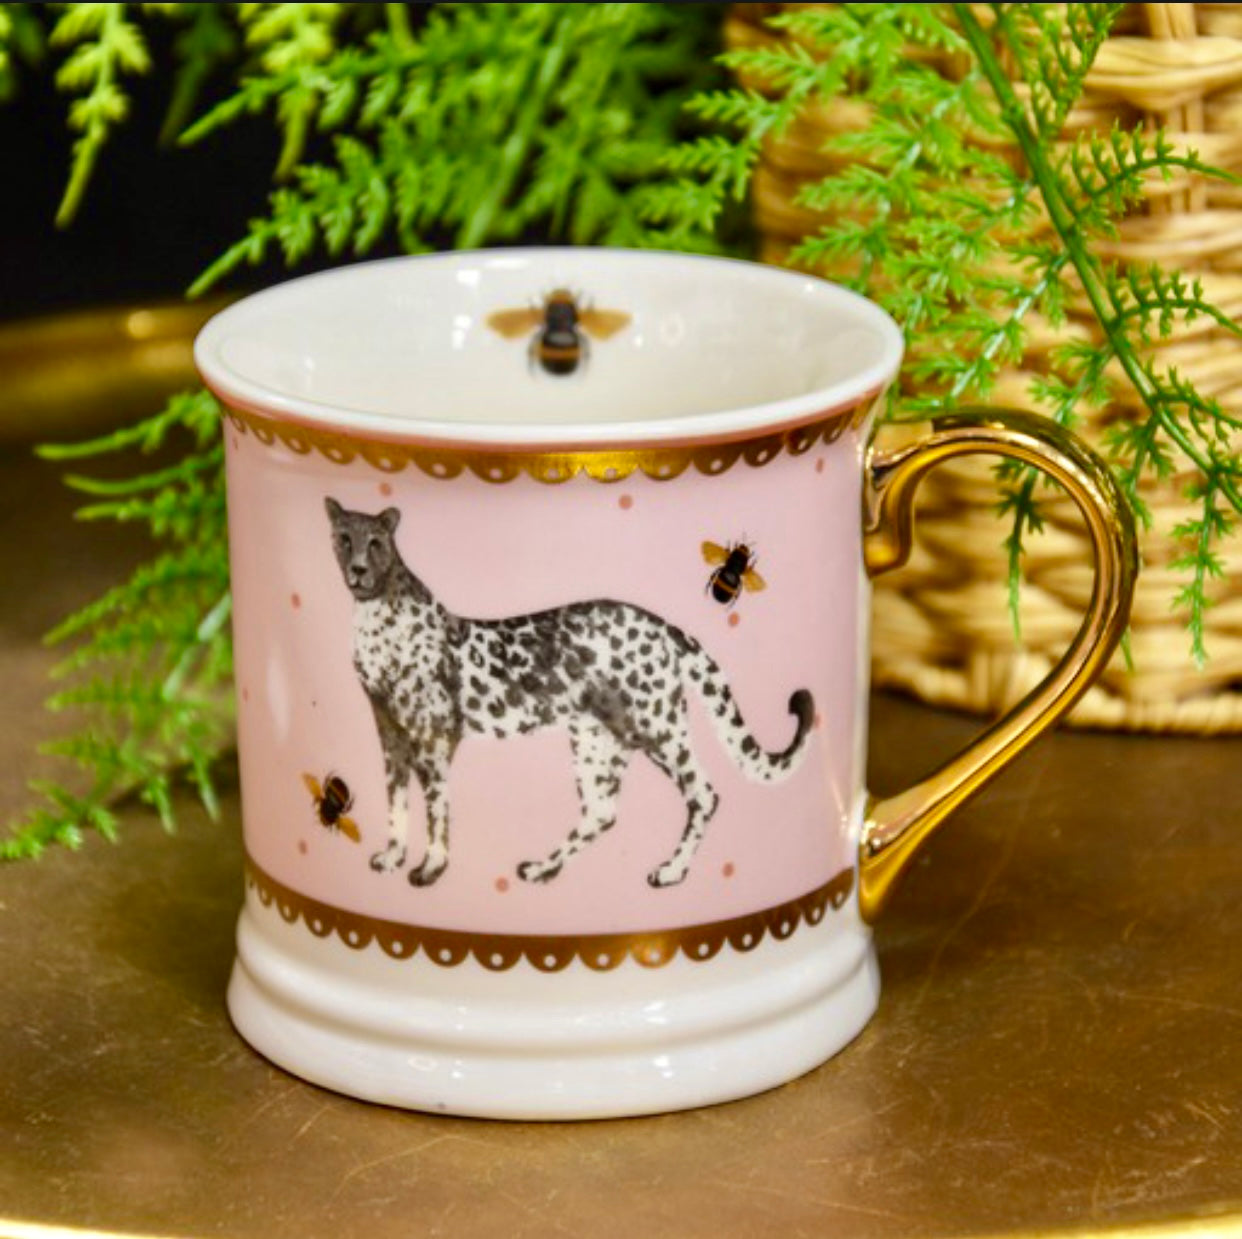 Wild Garden Tankard Porcelain Mug, Cheetah